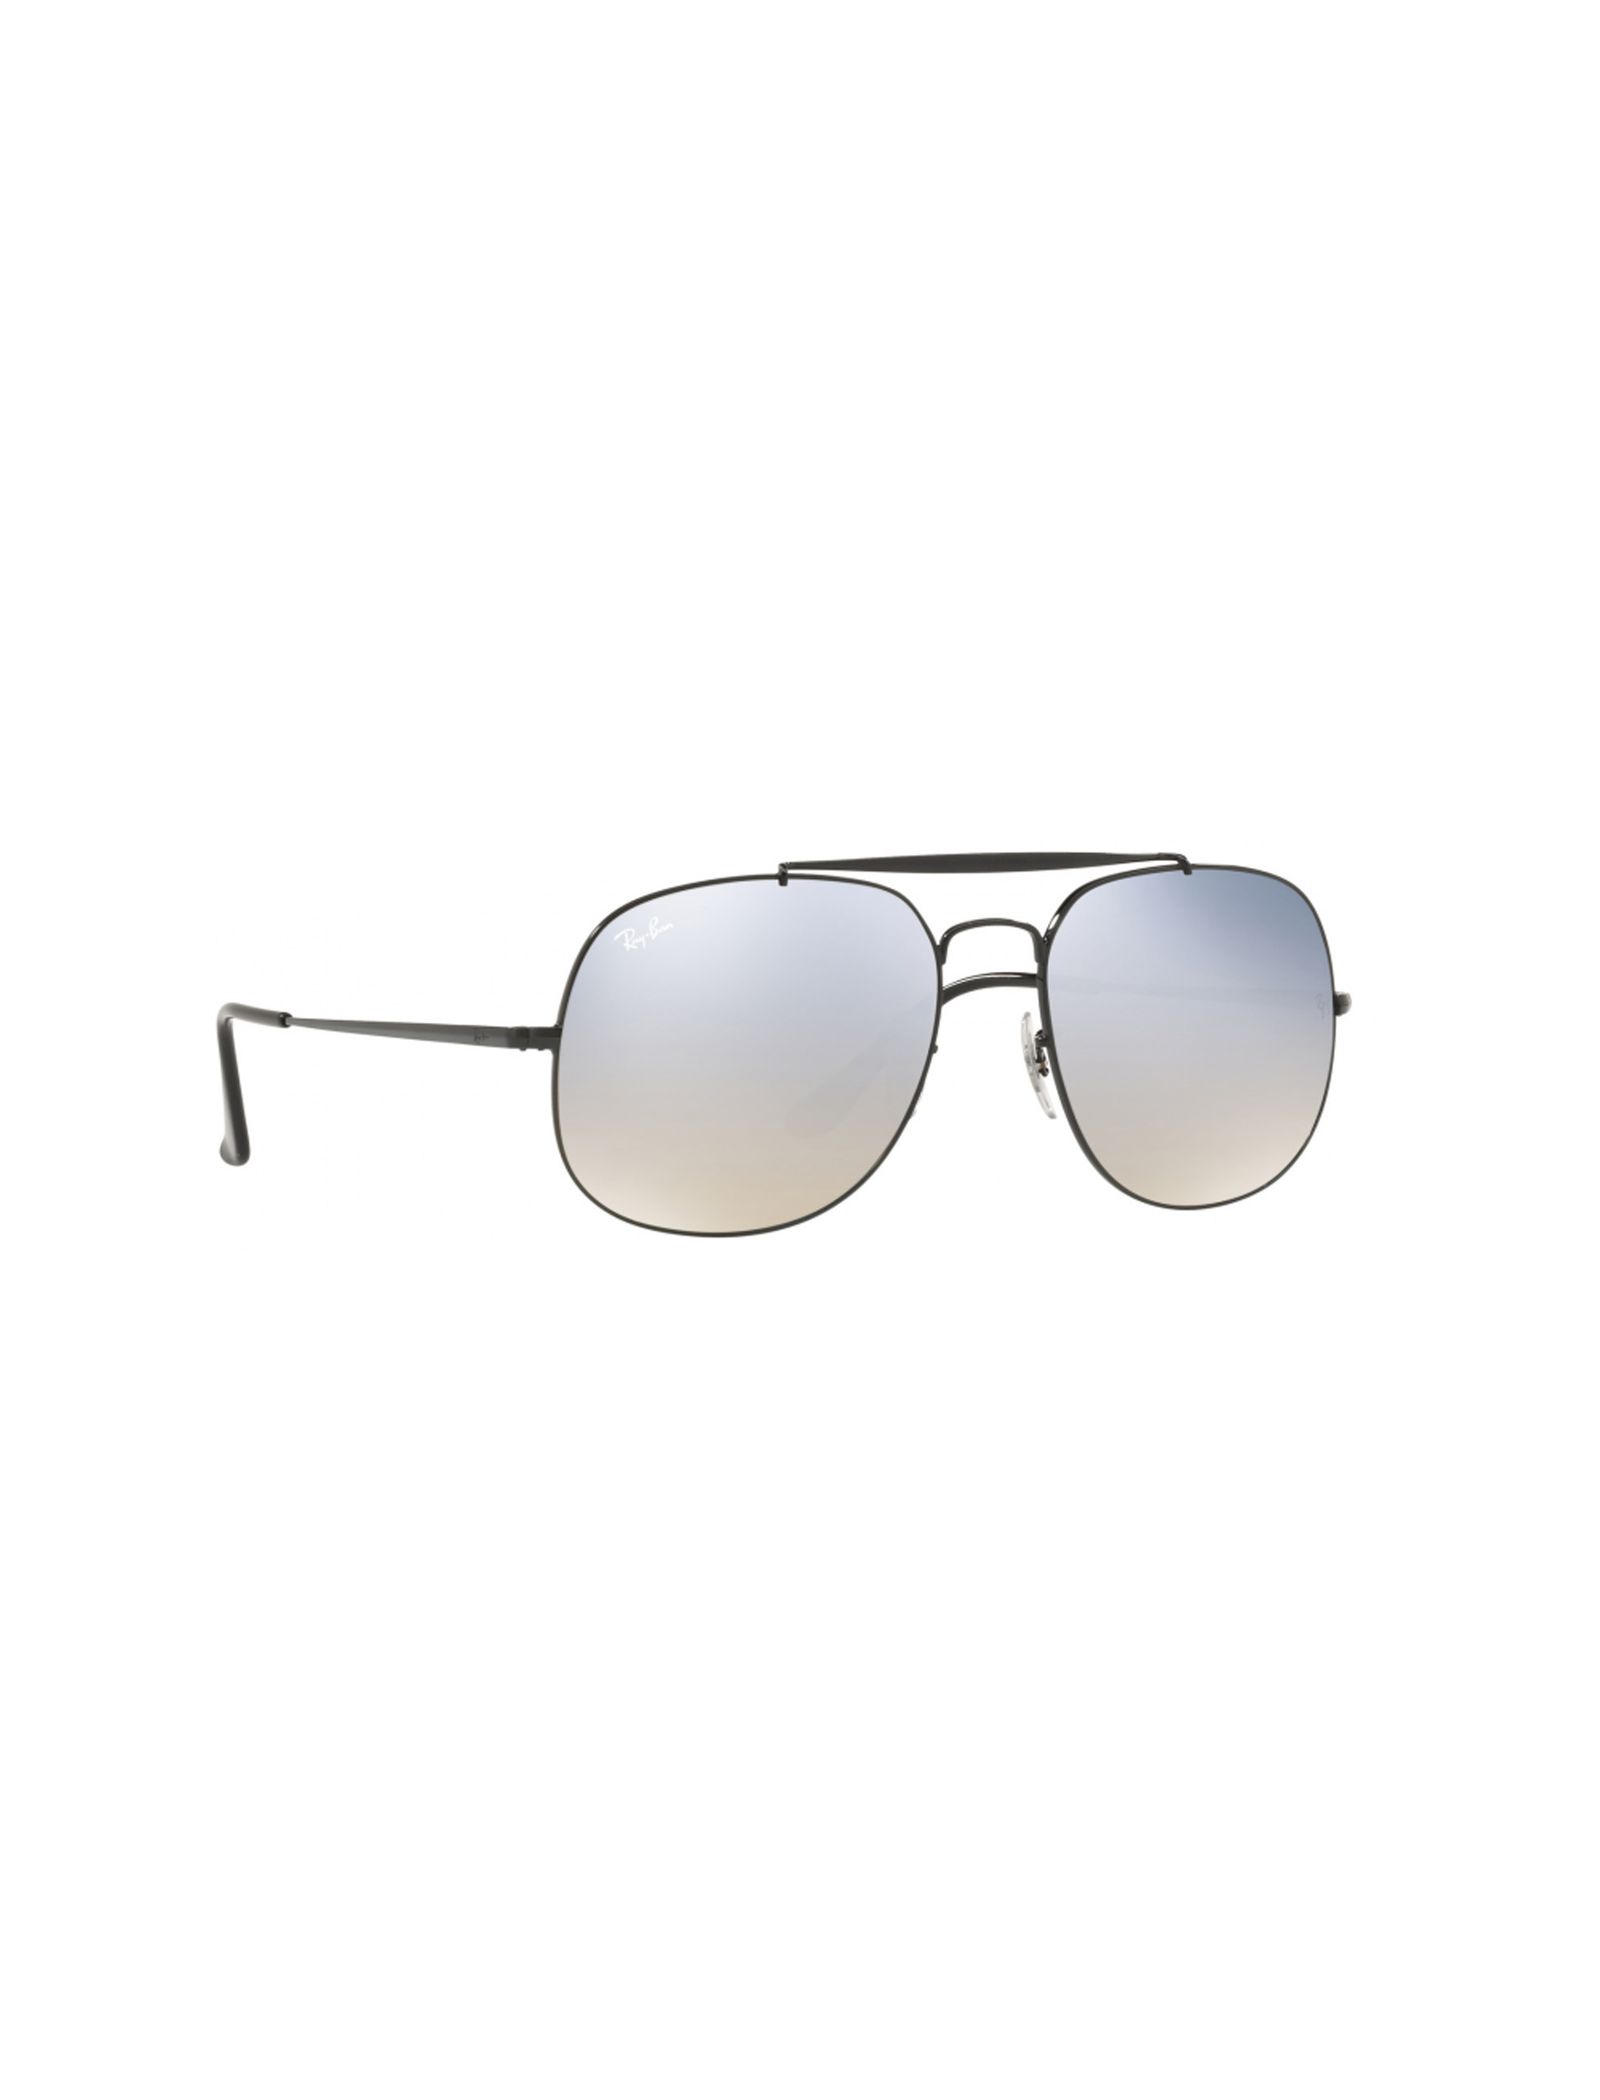 عینک آفتابی مردانه ری بن مدل 3561-002/9U - مشکی - 3